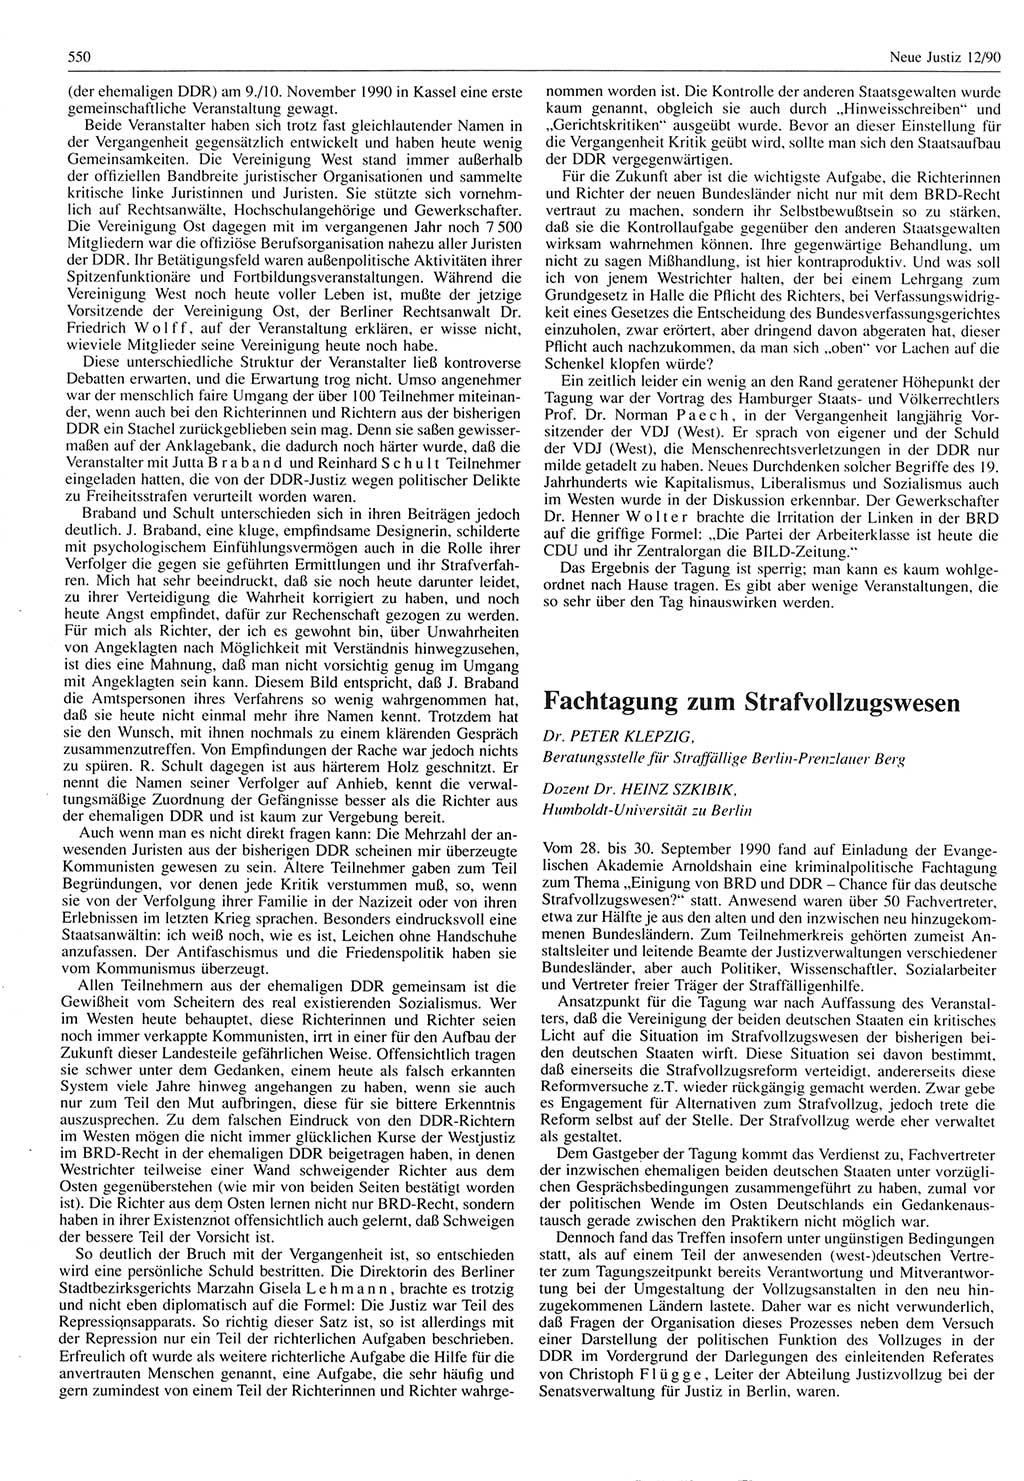 Neue Justiz (NJ), Zeitschrift für Rechtsetzung und Rechtsanwendung [Deutsche Demokratische Republik (DDR)], 44. Jahrgang 1990, Seite 550 (NJ DDR 1990, S. 550)